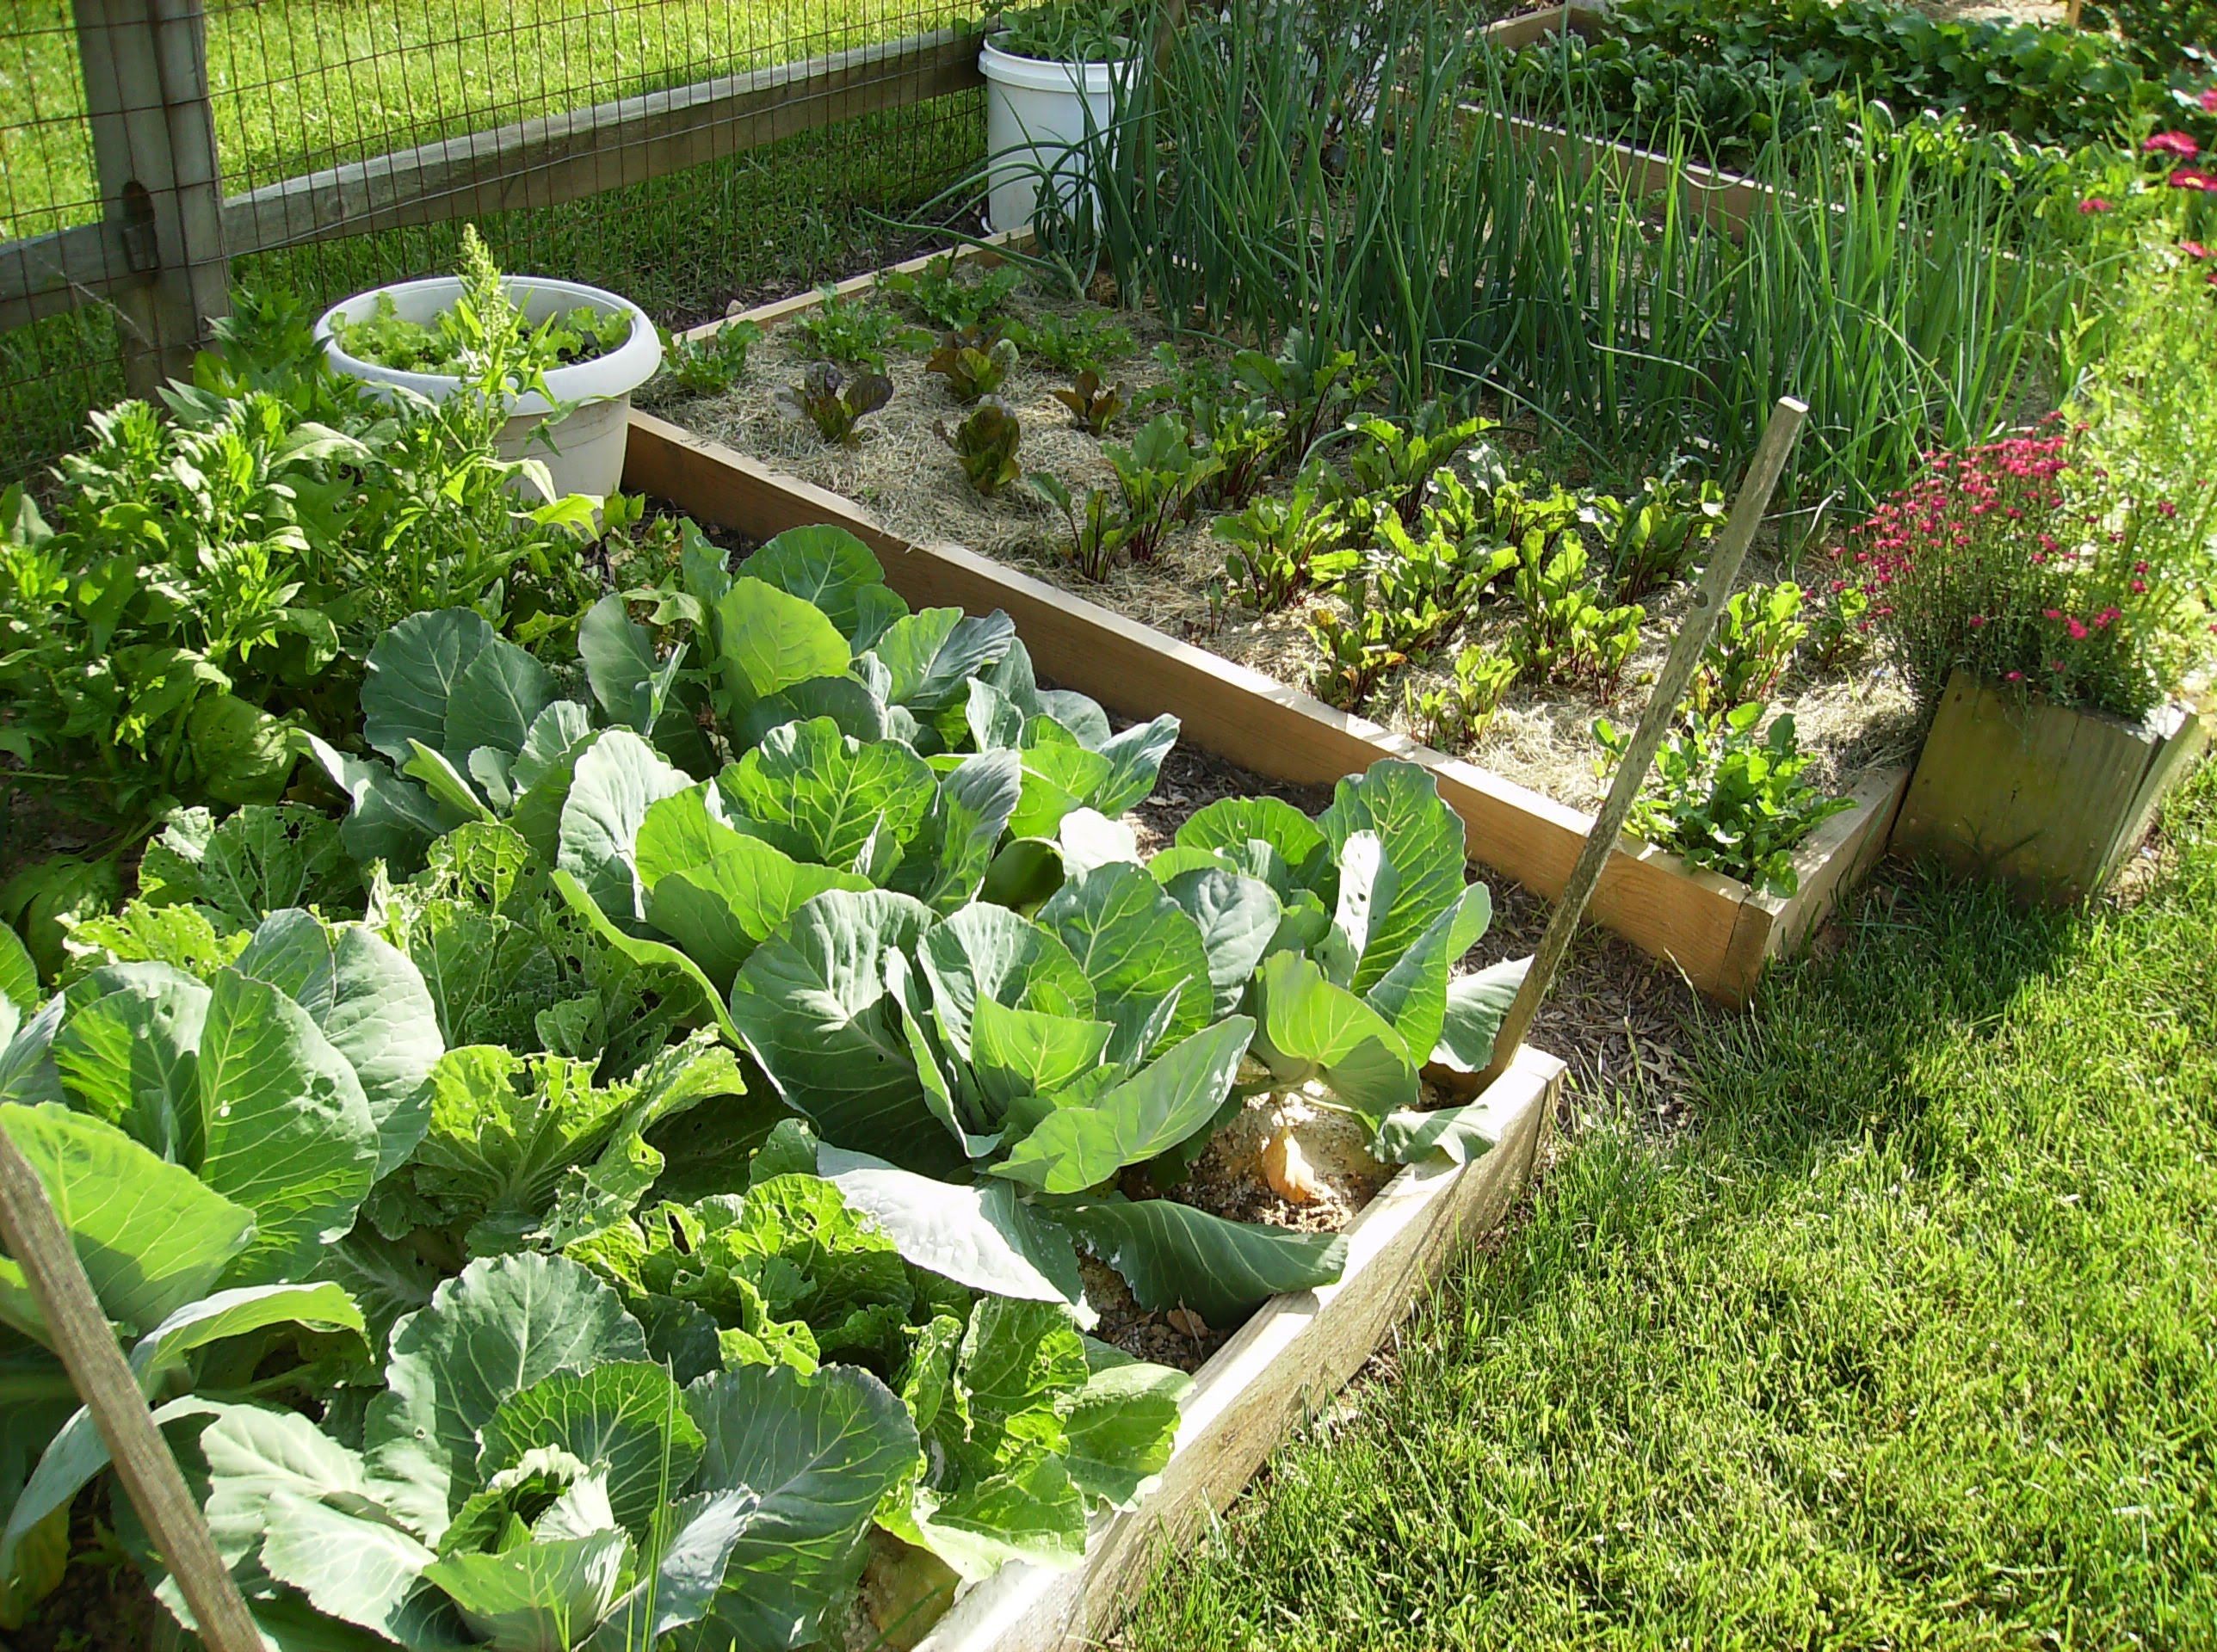 Watering Vegetable Gardening In A Raised Bed